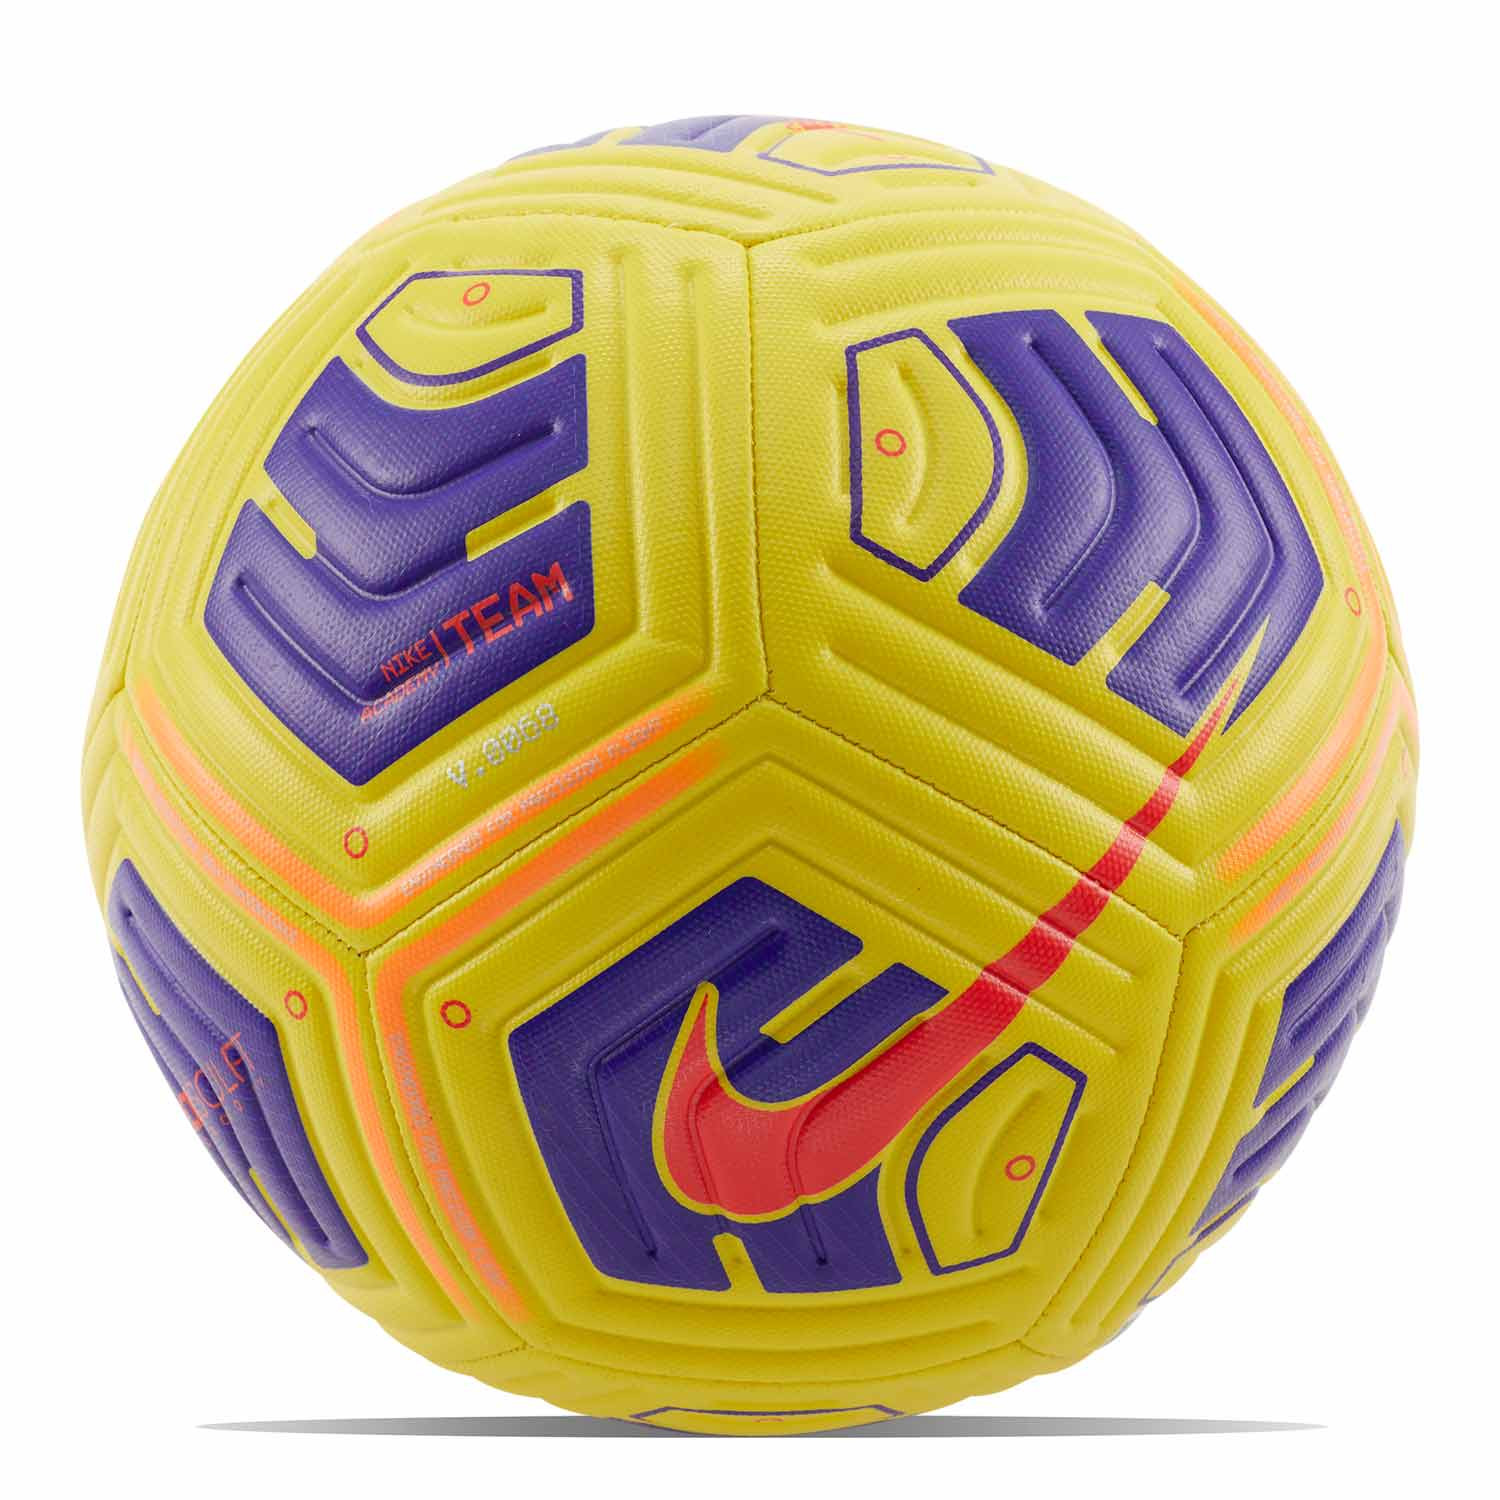 Balón Nike Academy Team 5 amarillo | futbolmania